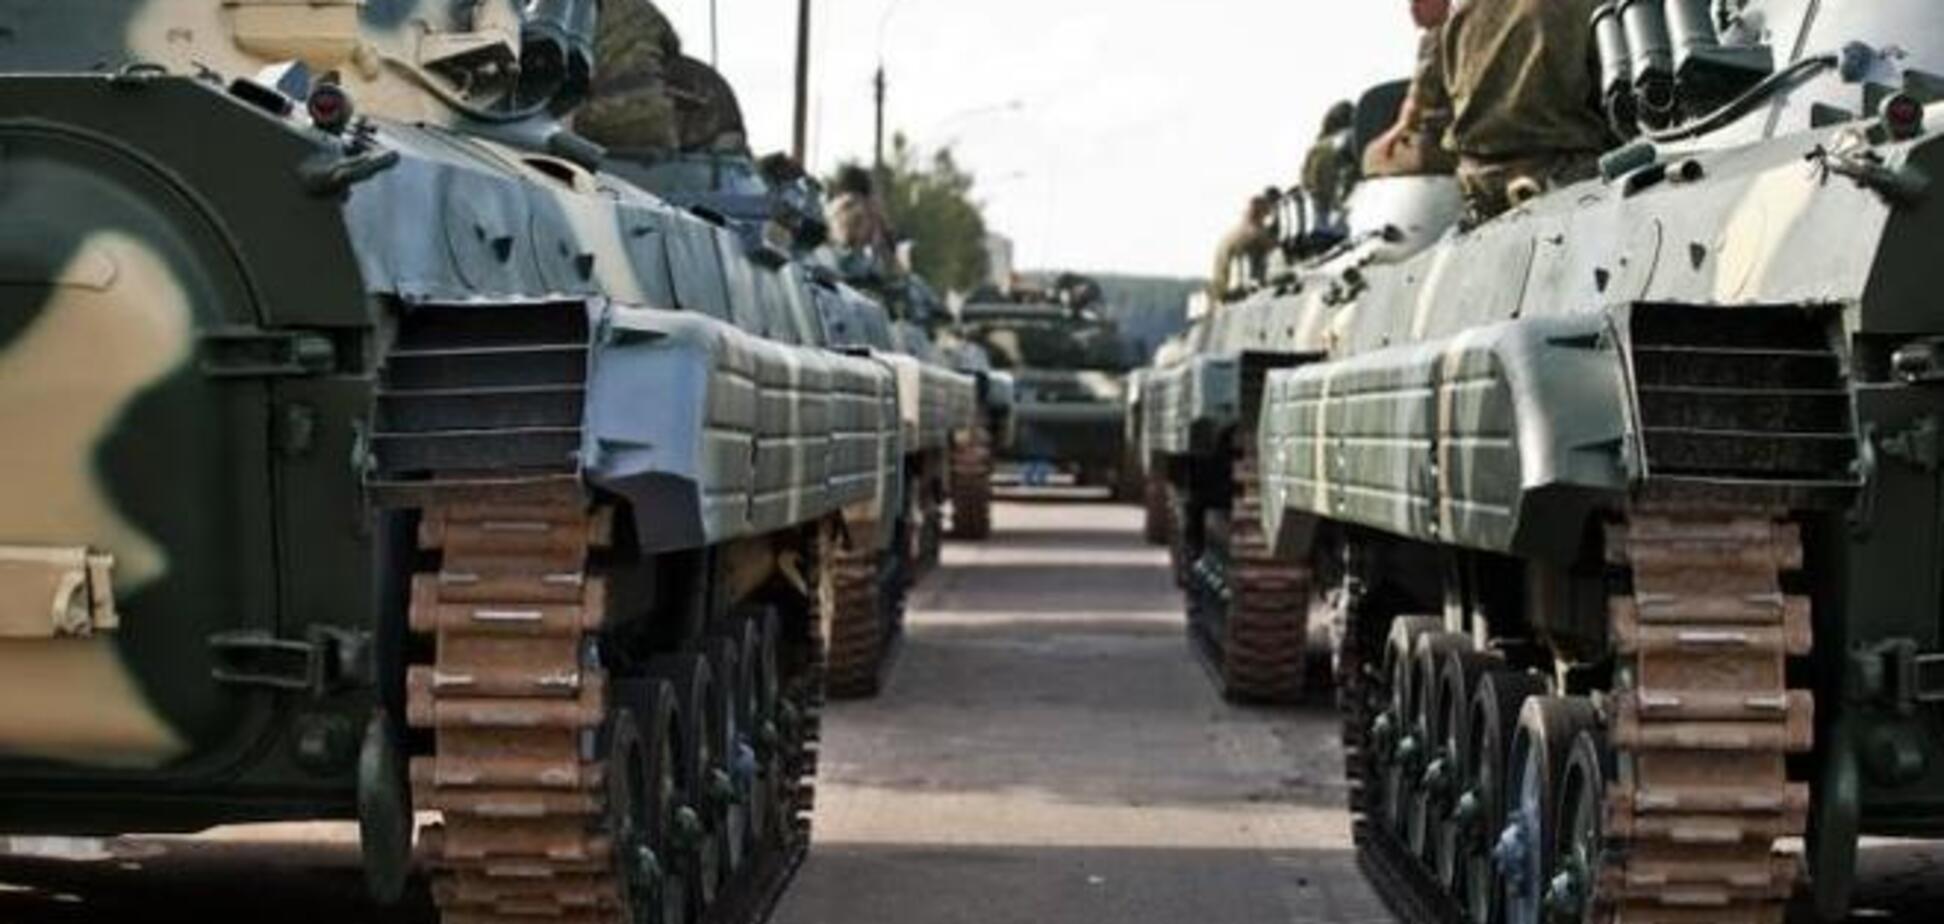 Бойцы АТО остановили колонну военной техники: уничтожено 10 бронемашин - СМИ